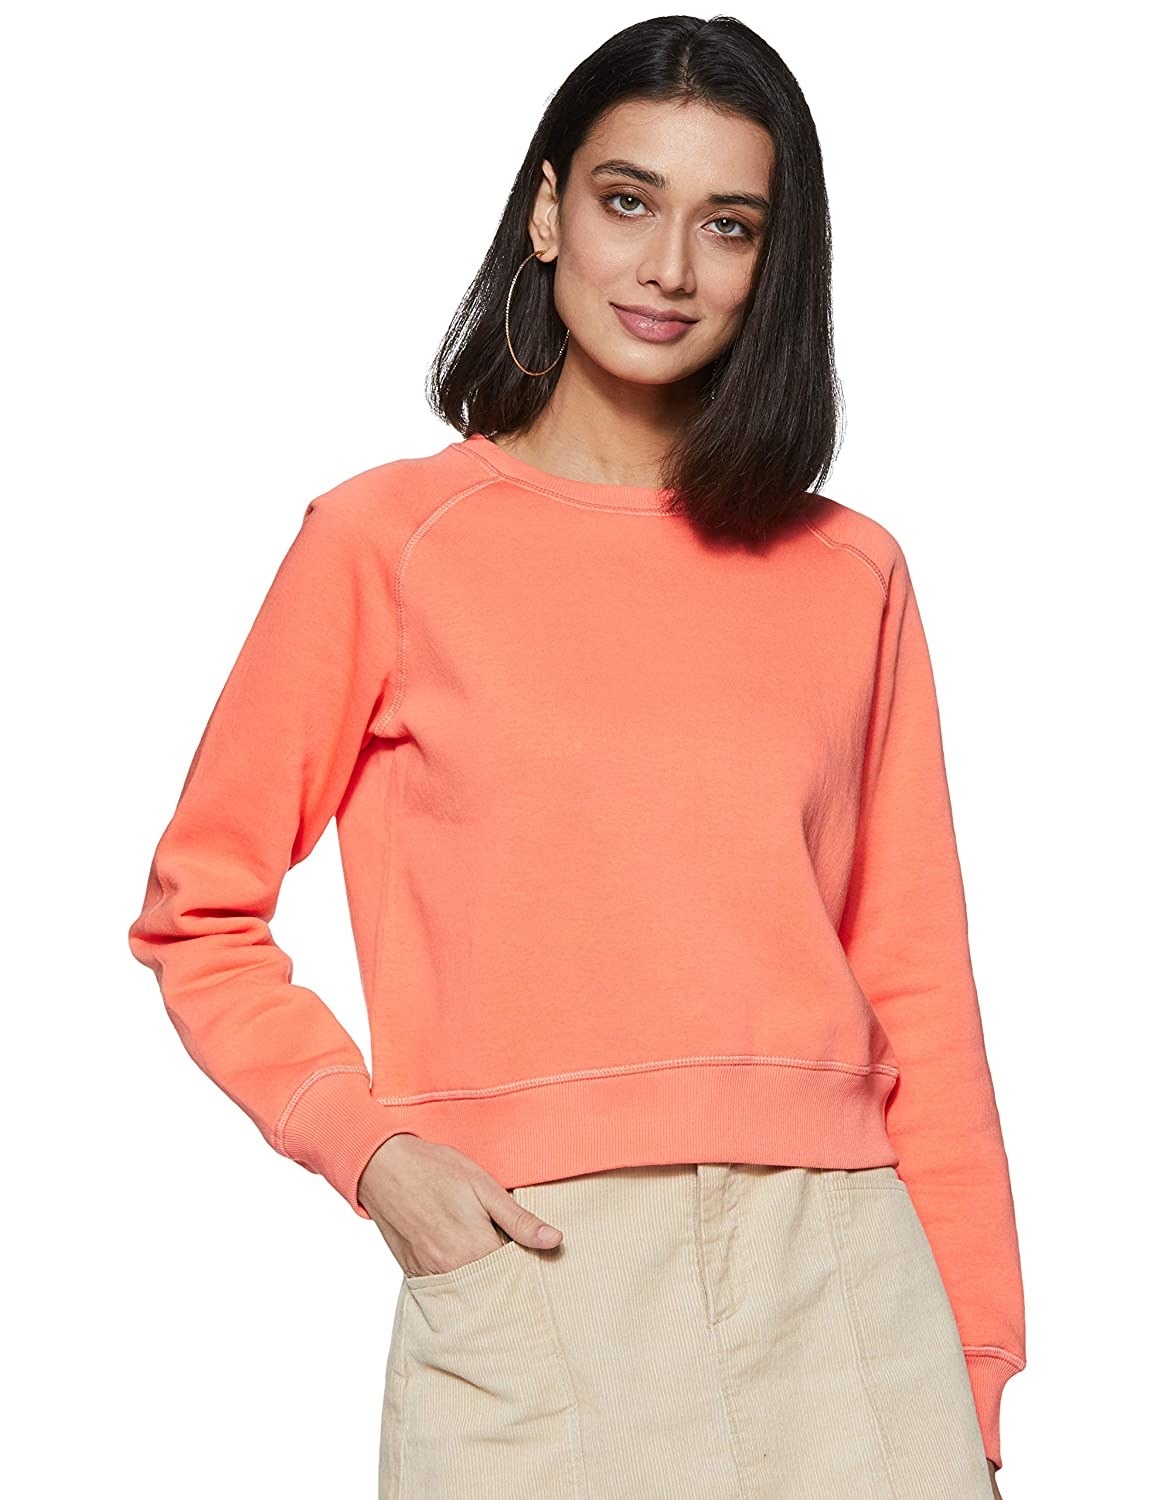 A woman wearing short sweatshirt in orange